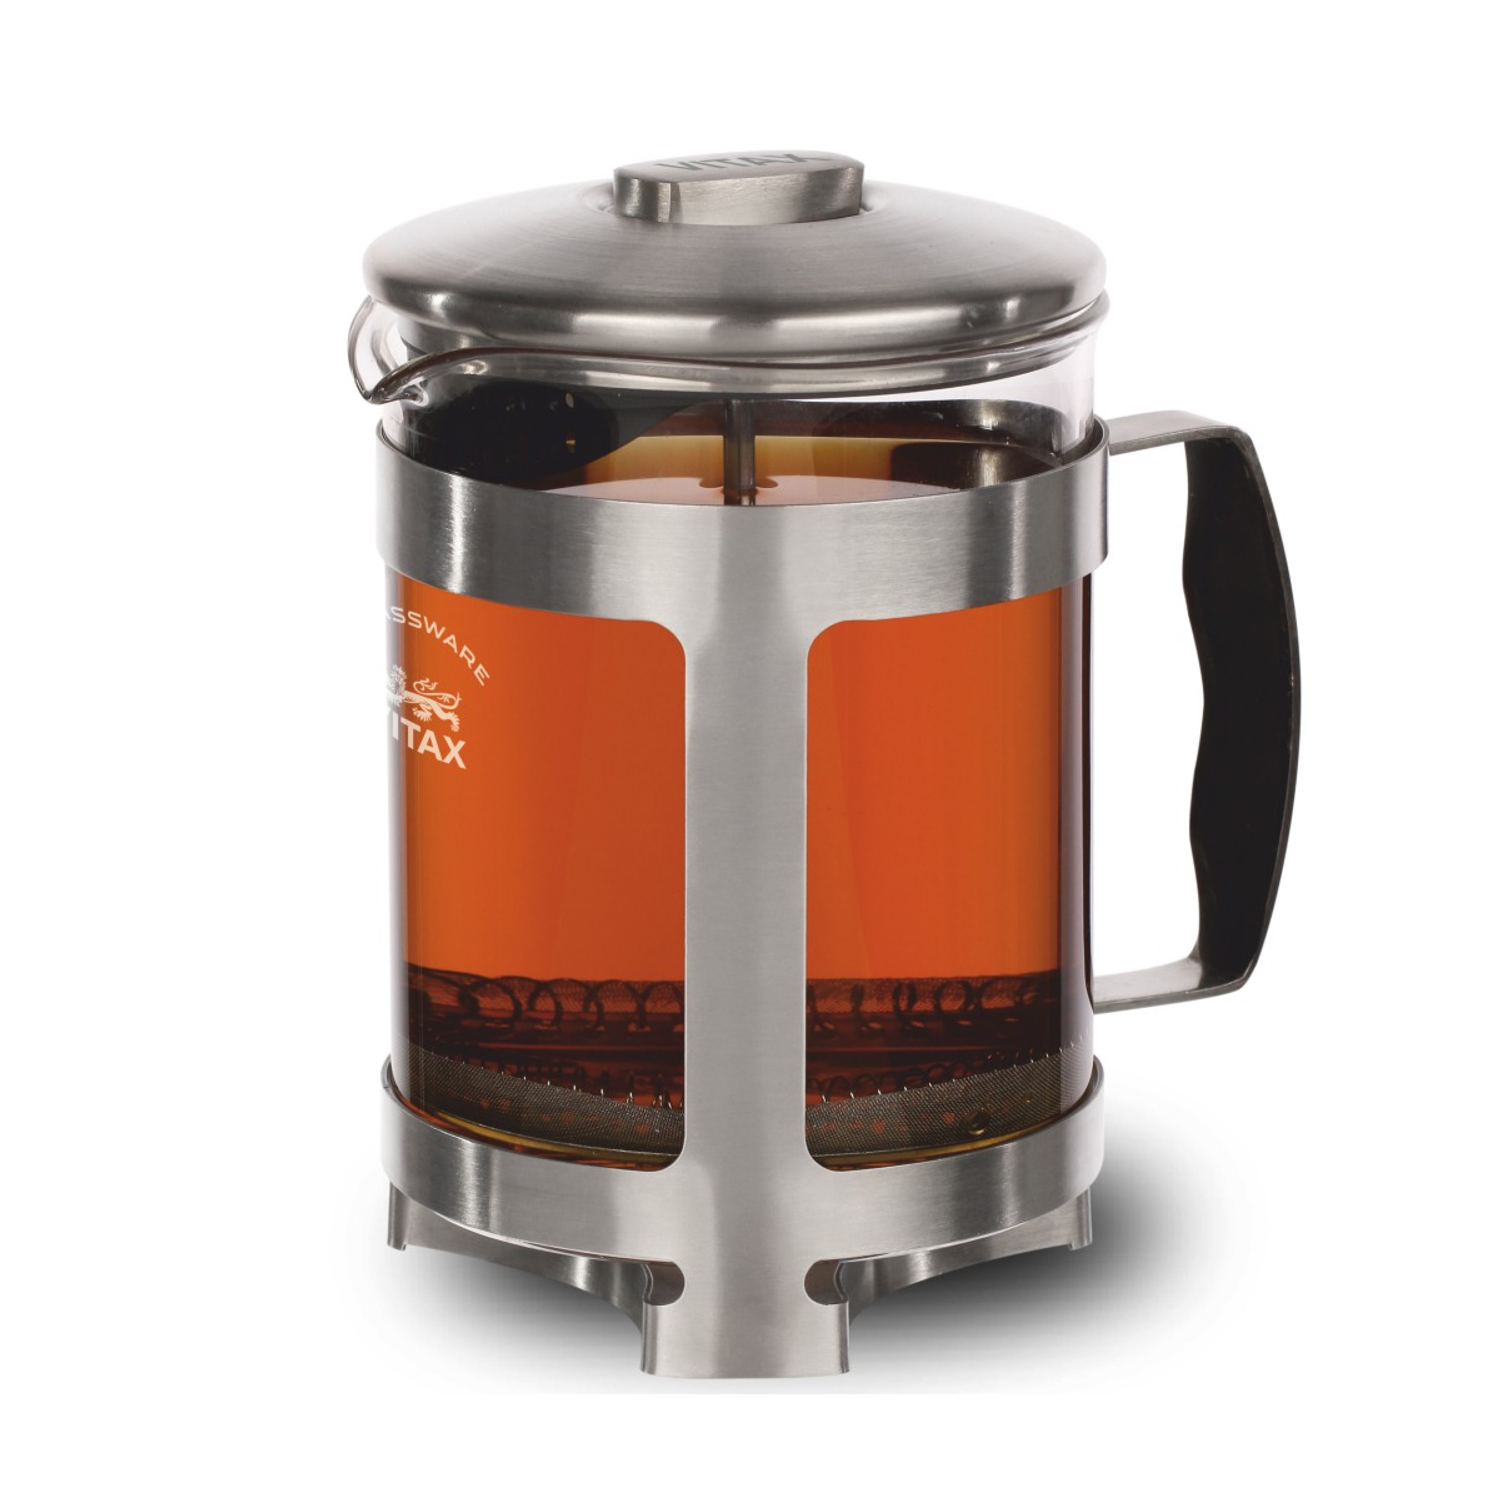 Френч-пресс Vitax объемом 0.6 литра для заваривания чая и приготовления молотого кофе - фото 1